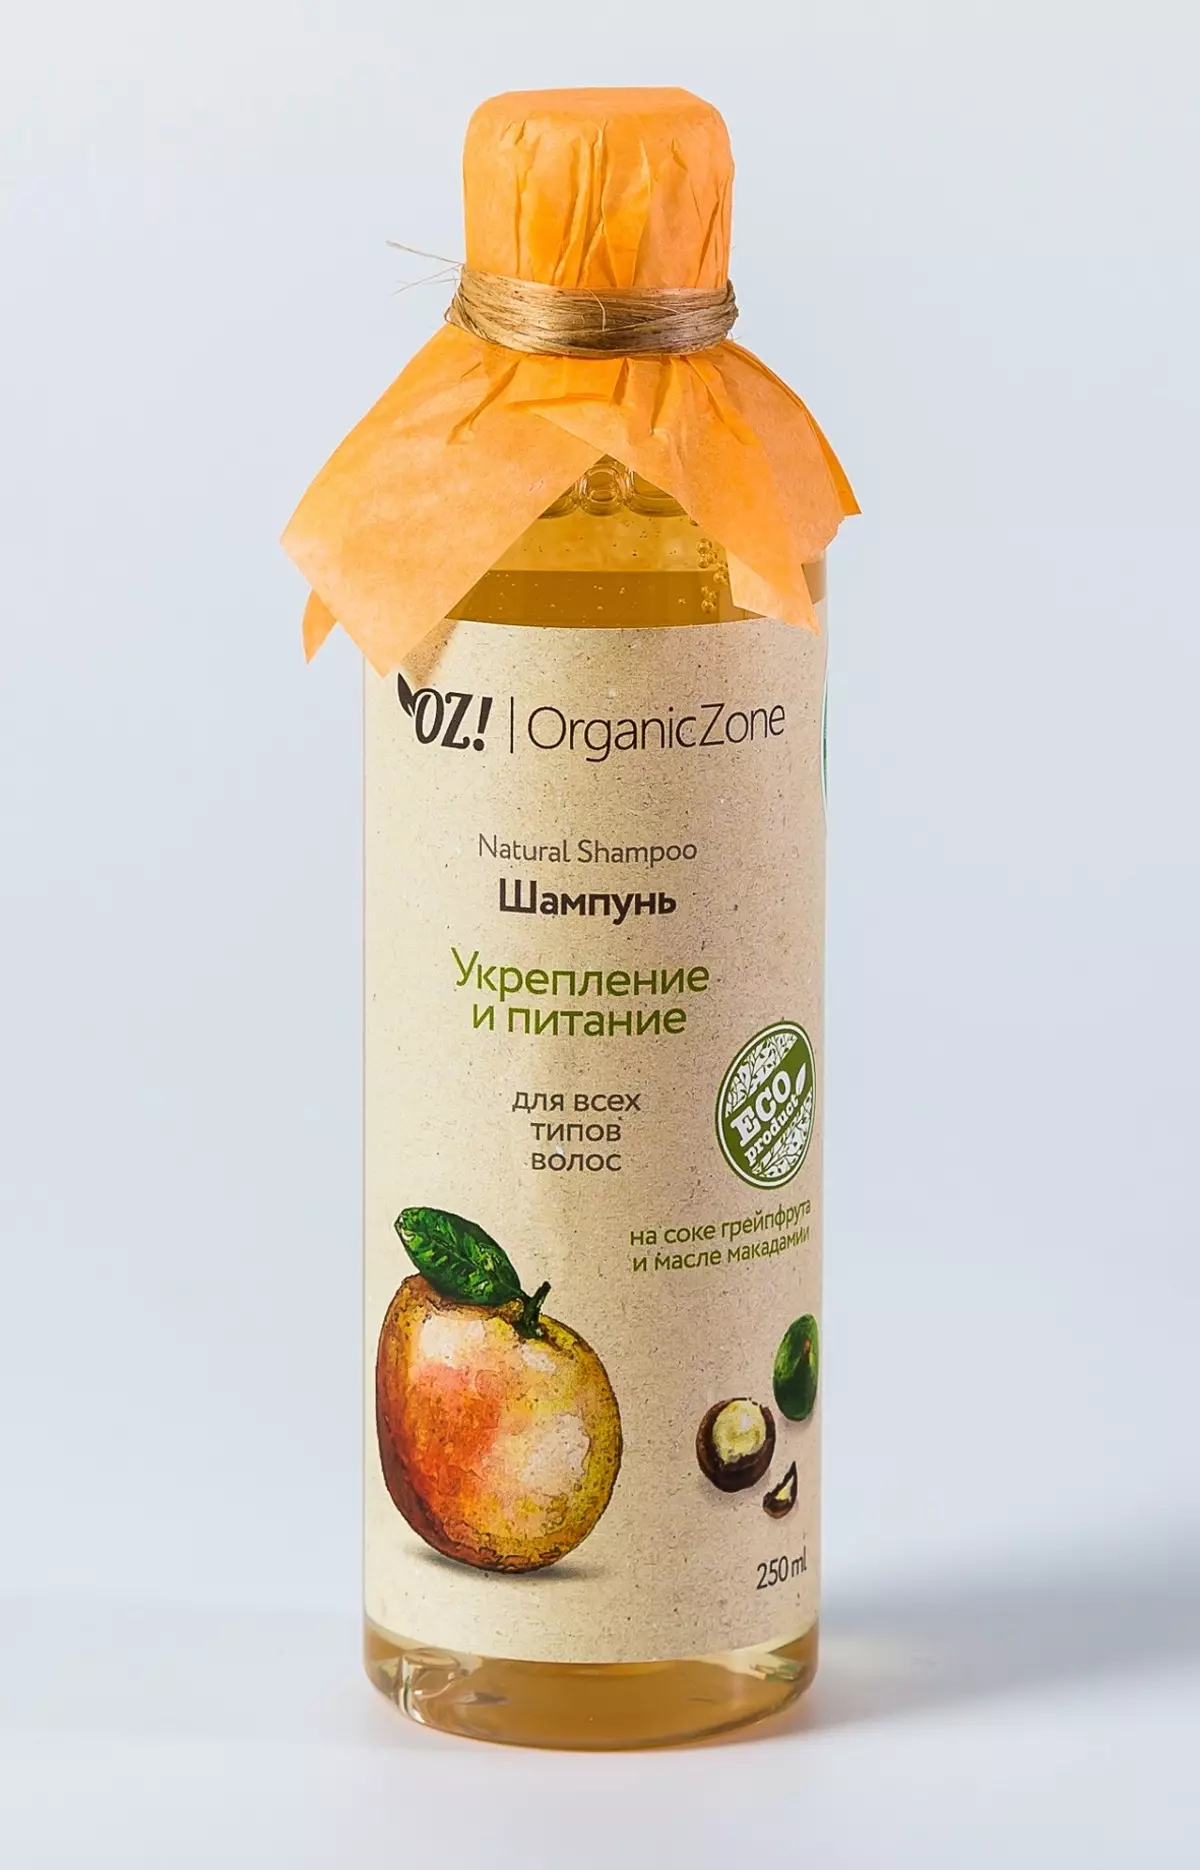 Kosmetika oz! OrganicZone: Produktöversikt, Fördelar och Nackdelar, Välj och recensioner 4764_14